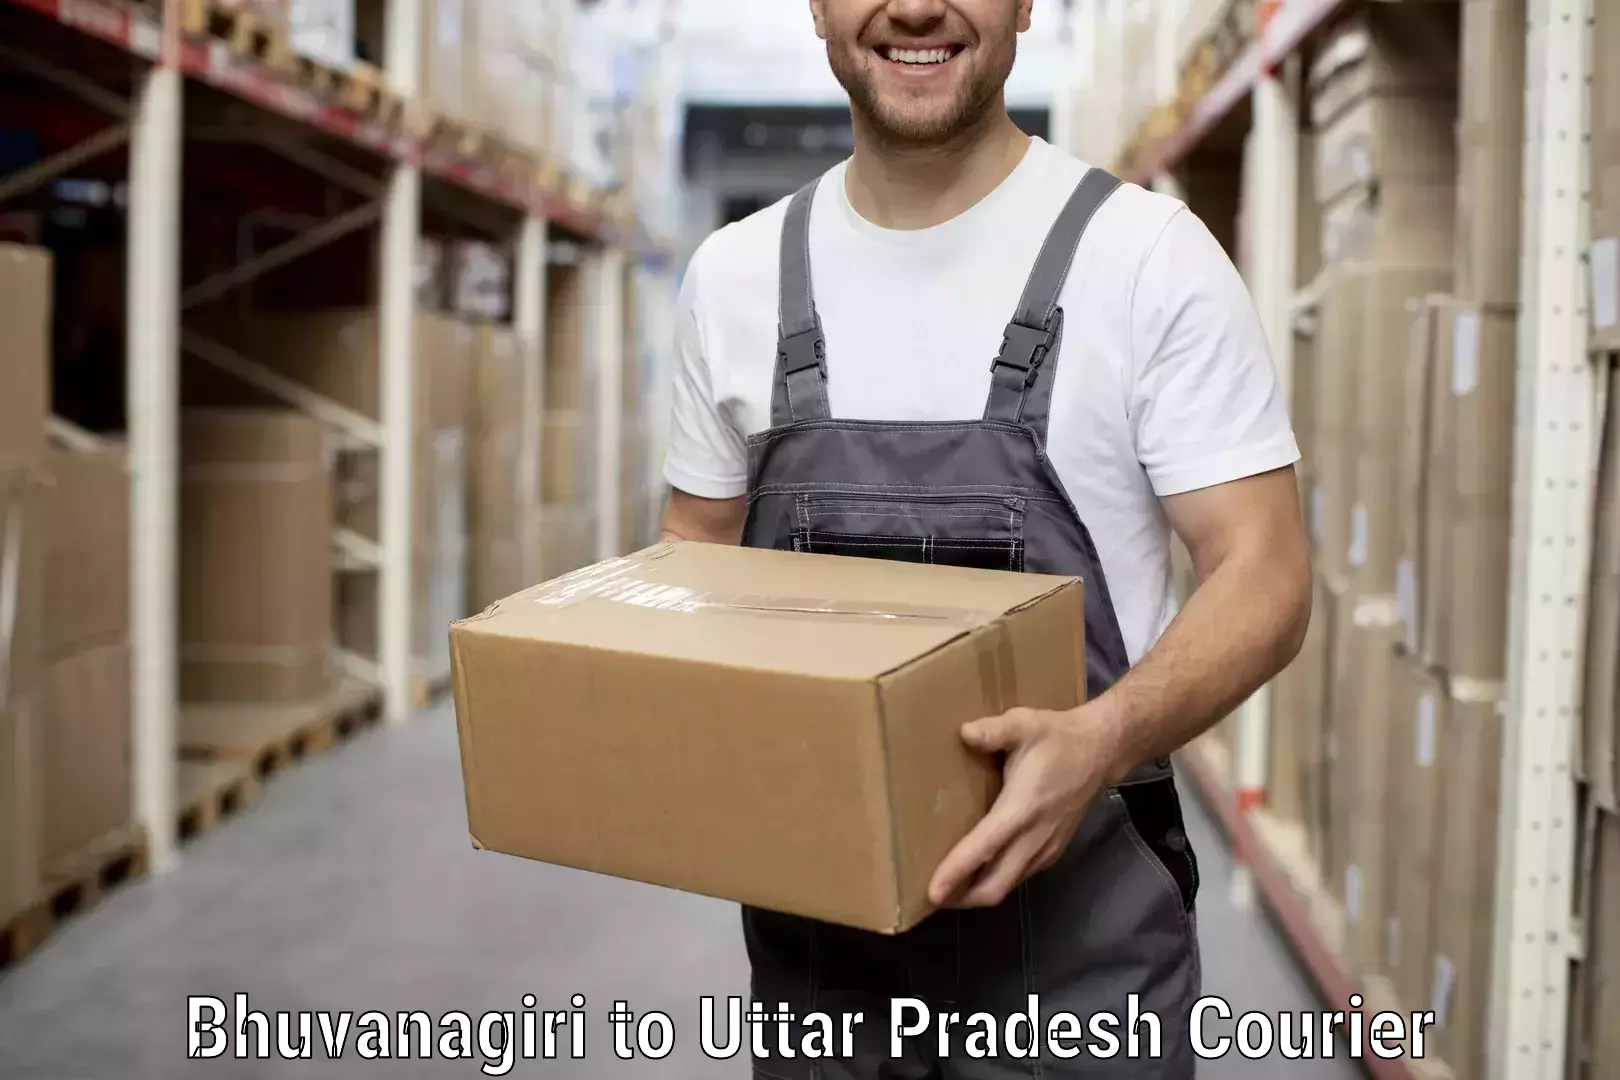 Moving and packing experts Bhuvanagiri to Sadat